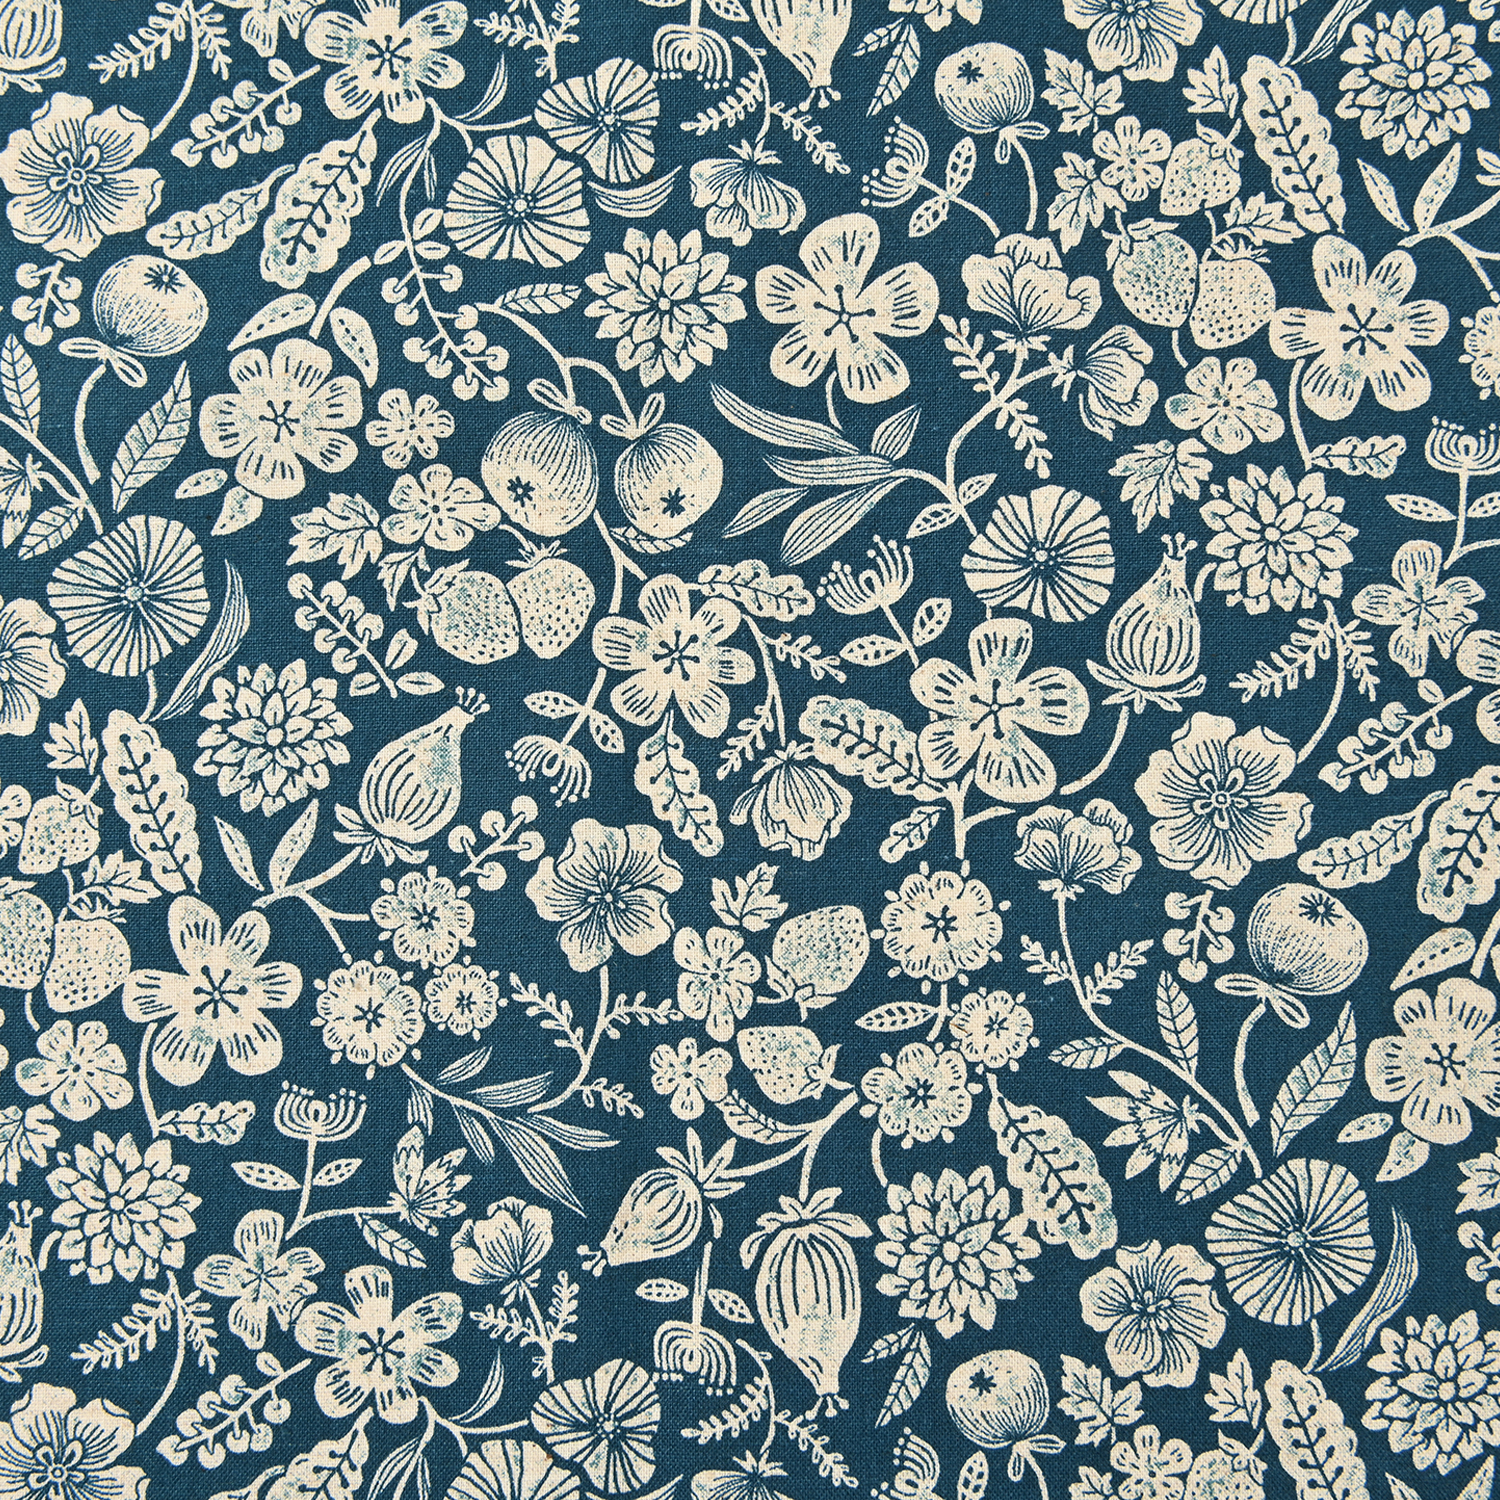 Imagen del producto: Tela Kokka "Natural Garden Obana" azul marino, algodón/lino - medio metro